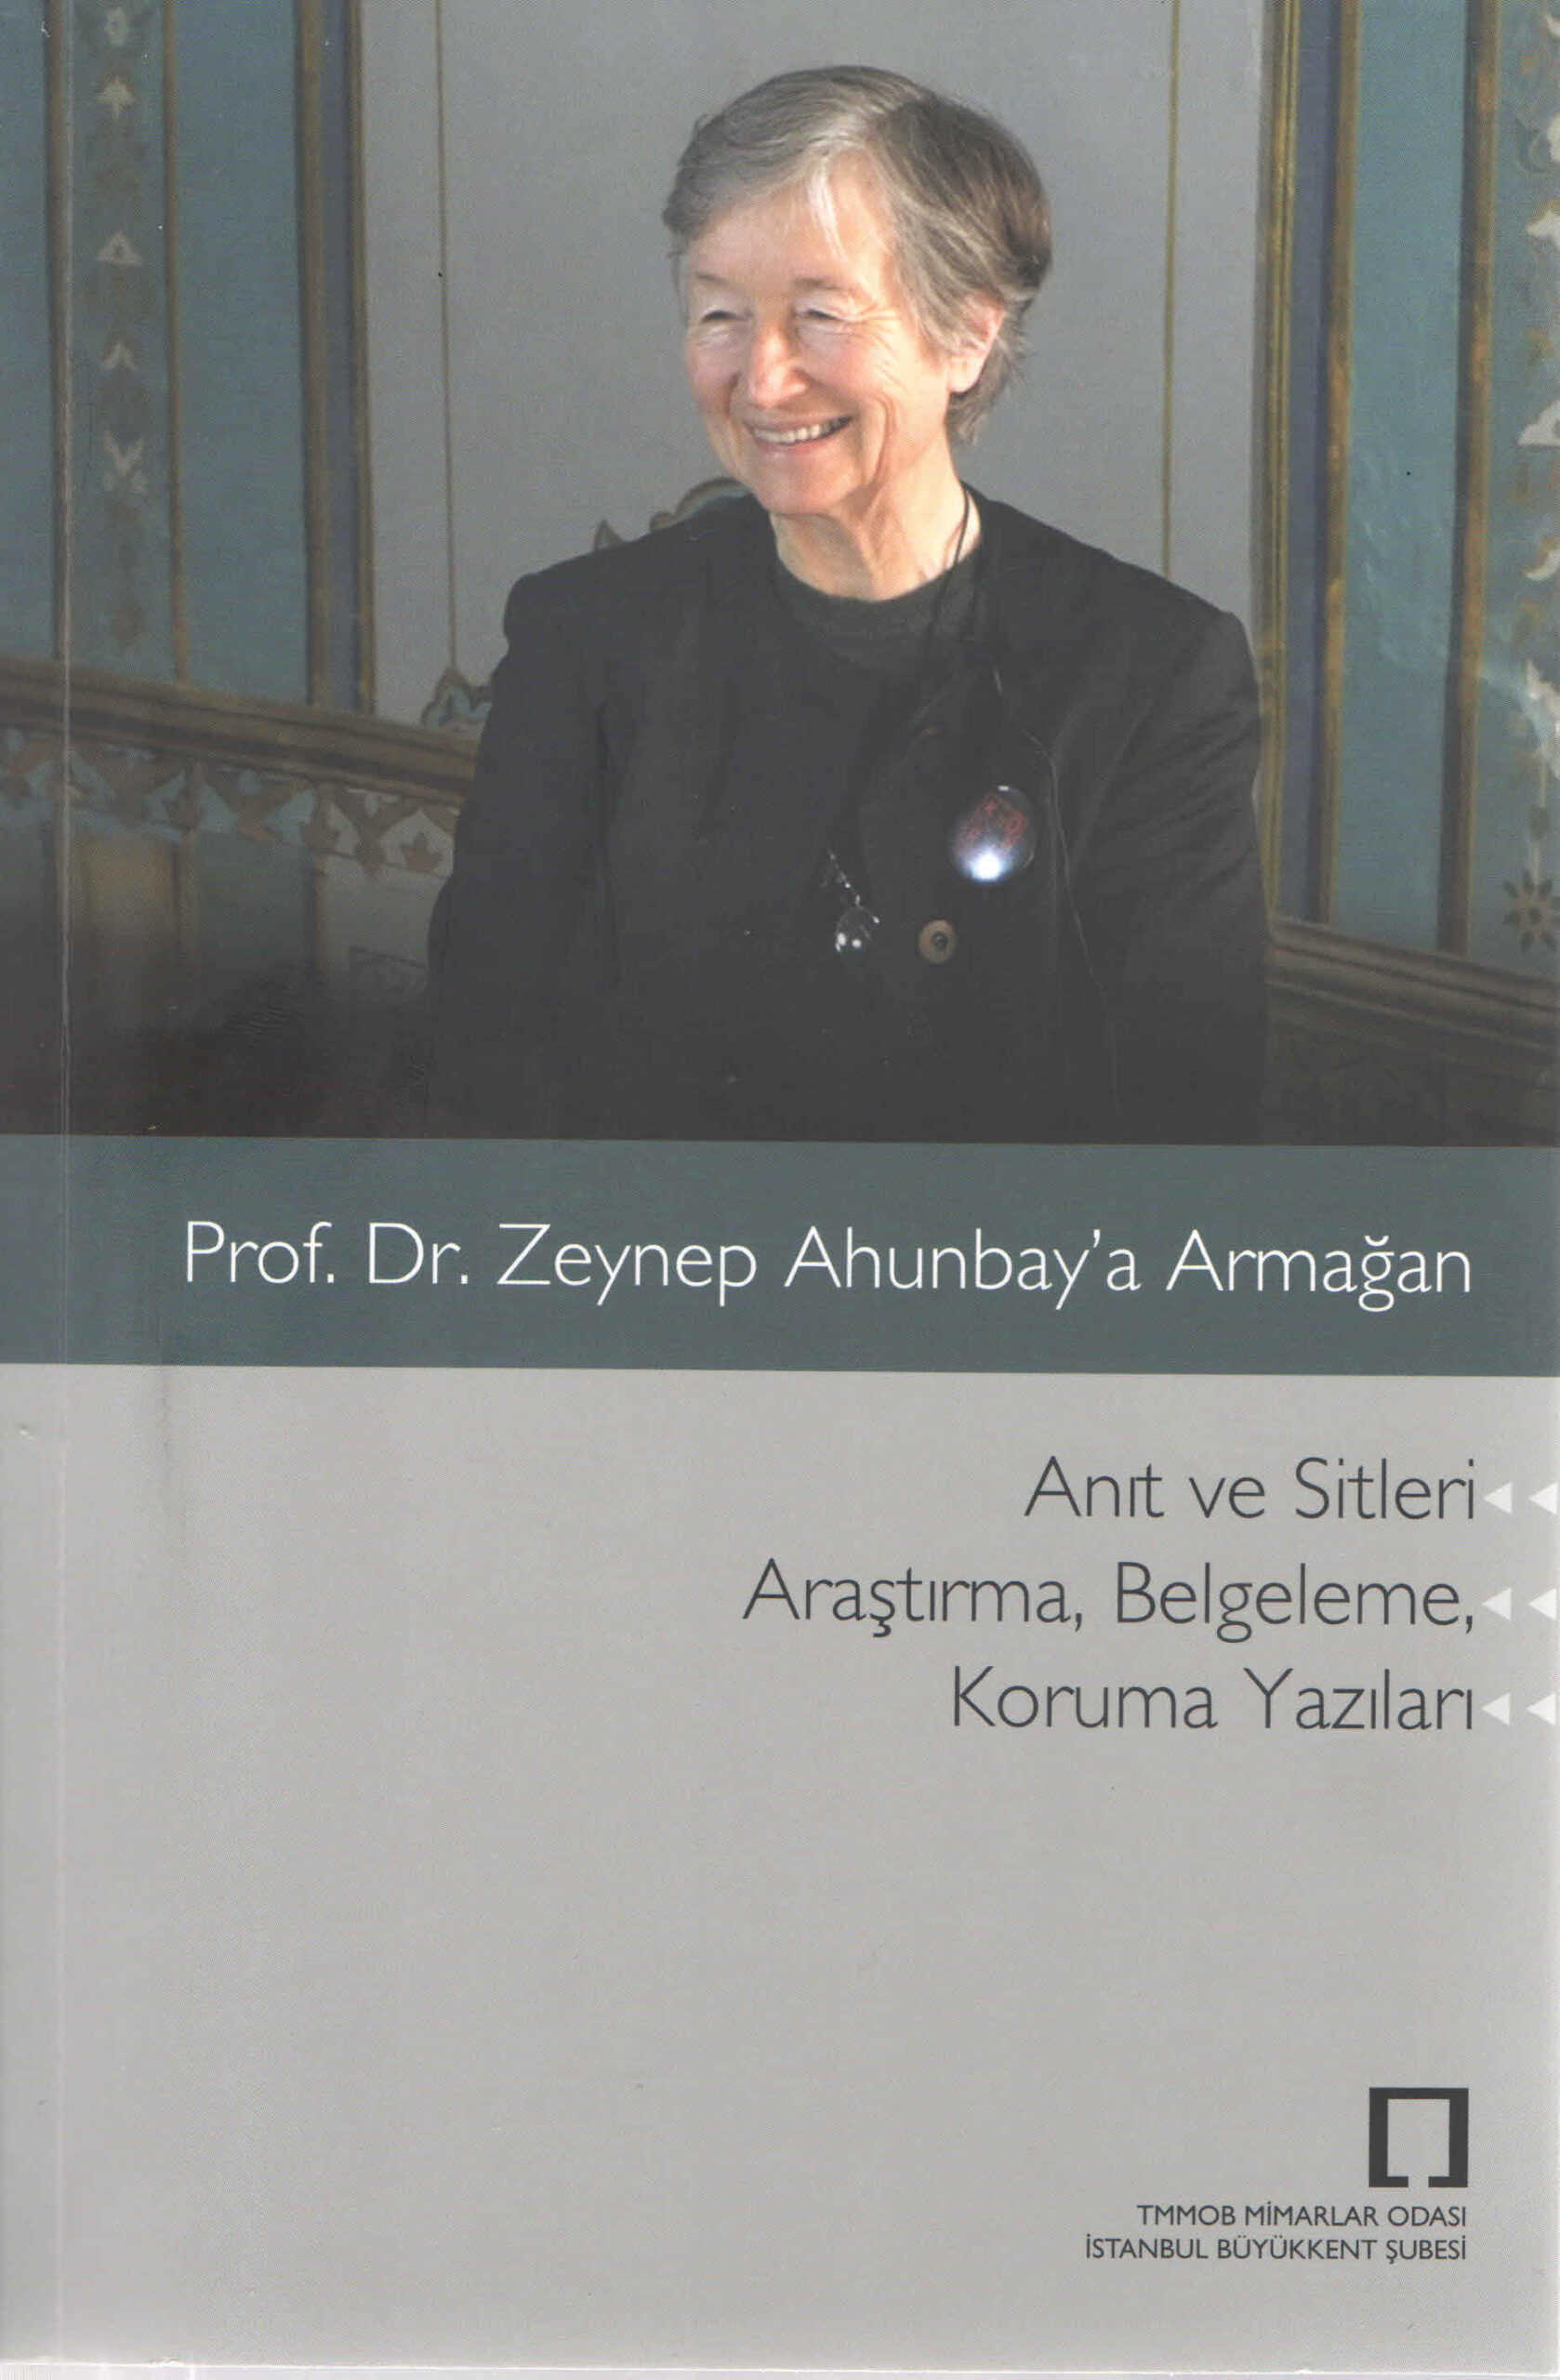 Prof. Dr. Zeynep Ahunbay'a Armağan